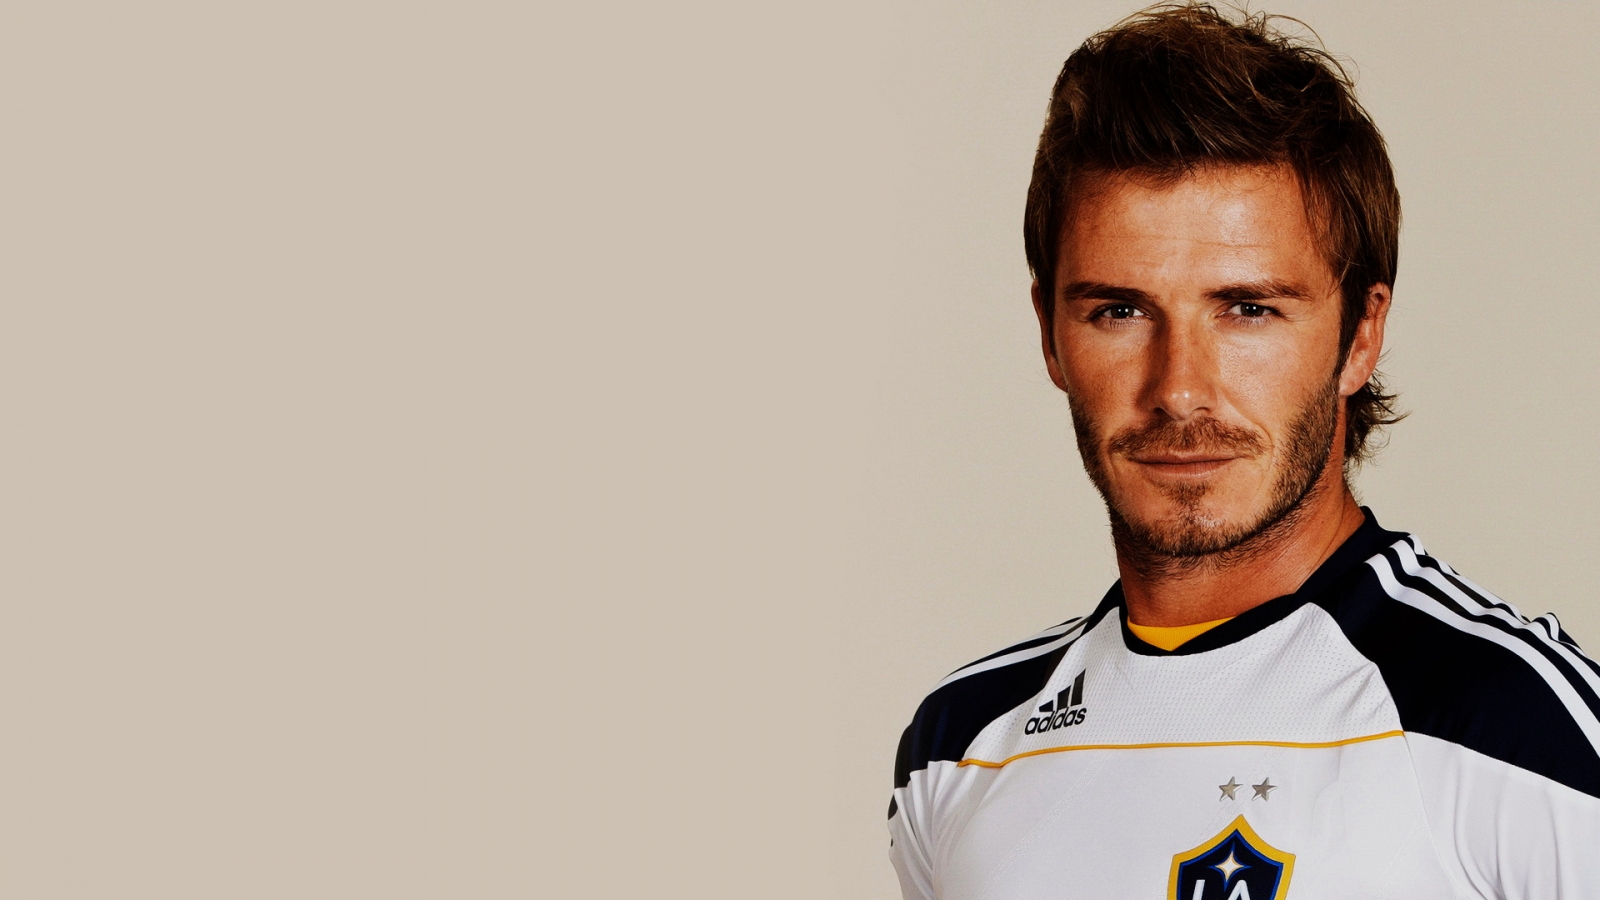 David Beckham Smile for 1600 x 900 HDTV resolution